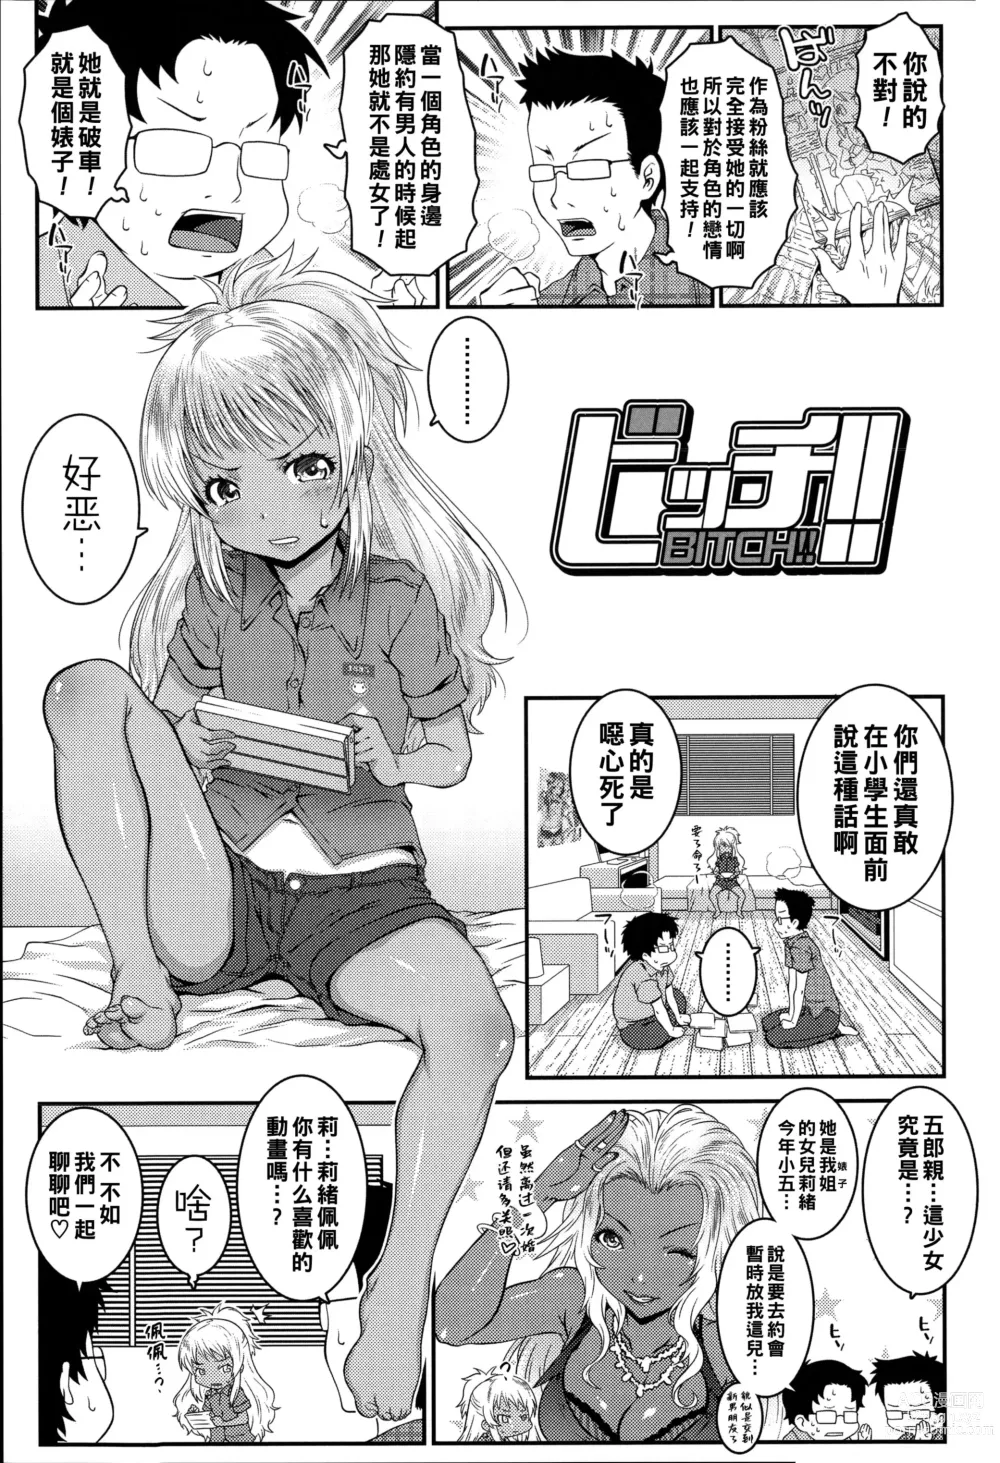 Page 1 of manga Bitch!!